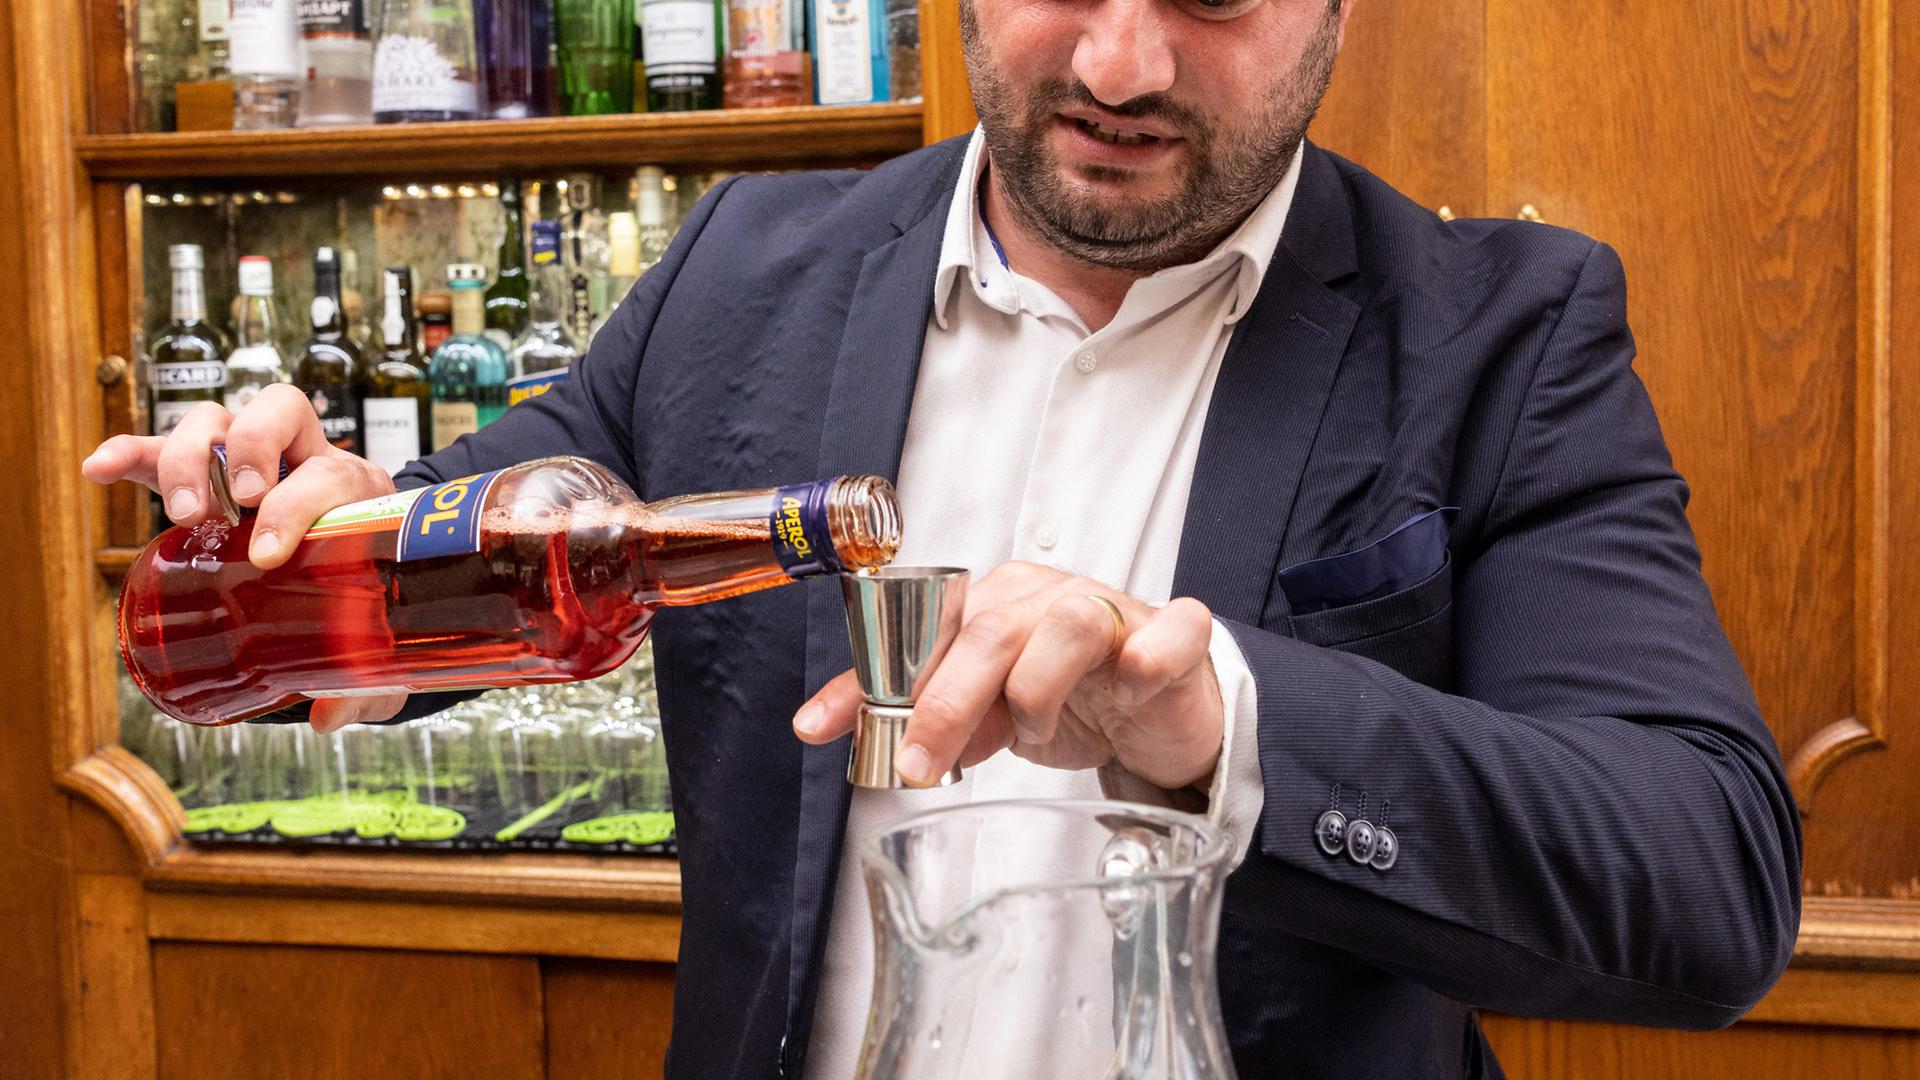 Marius Bîrzan prépare son cocktail 369, de sa propre création. Il le présentera au championnat du monde à Cuba.